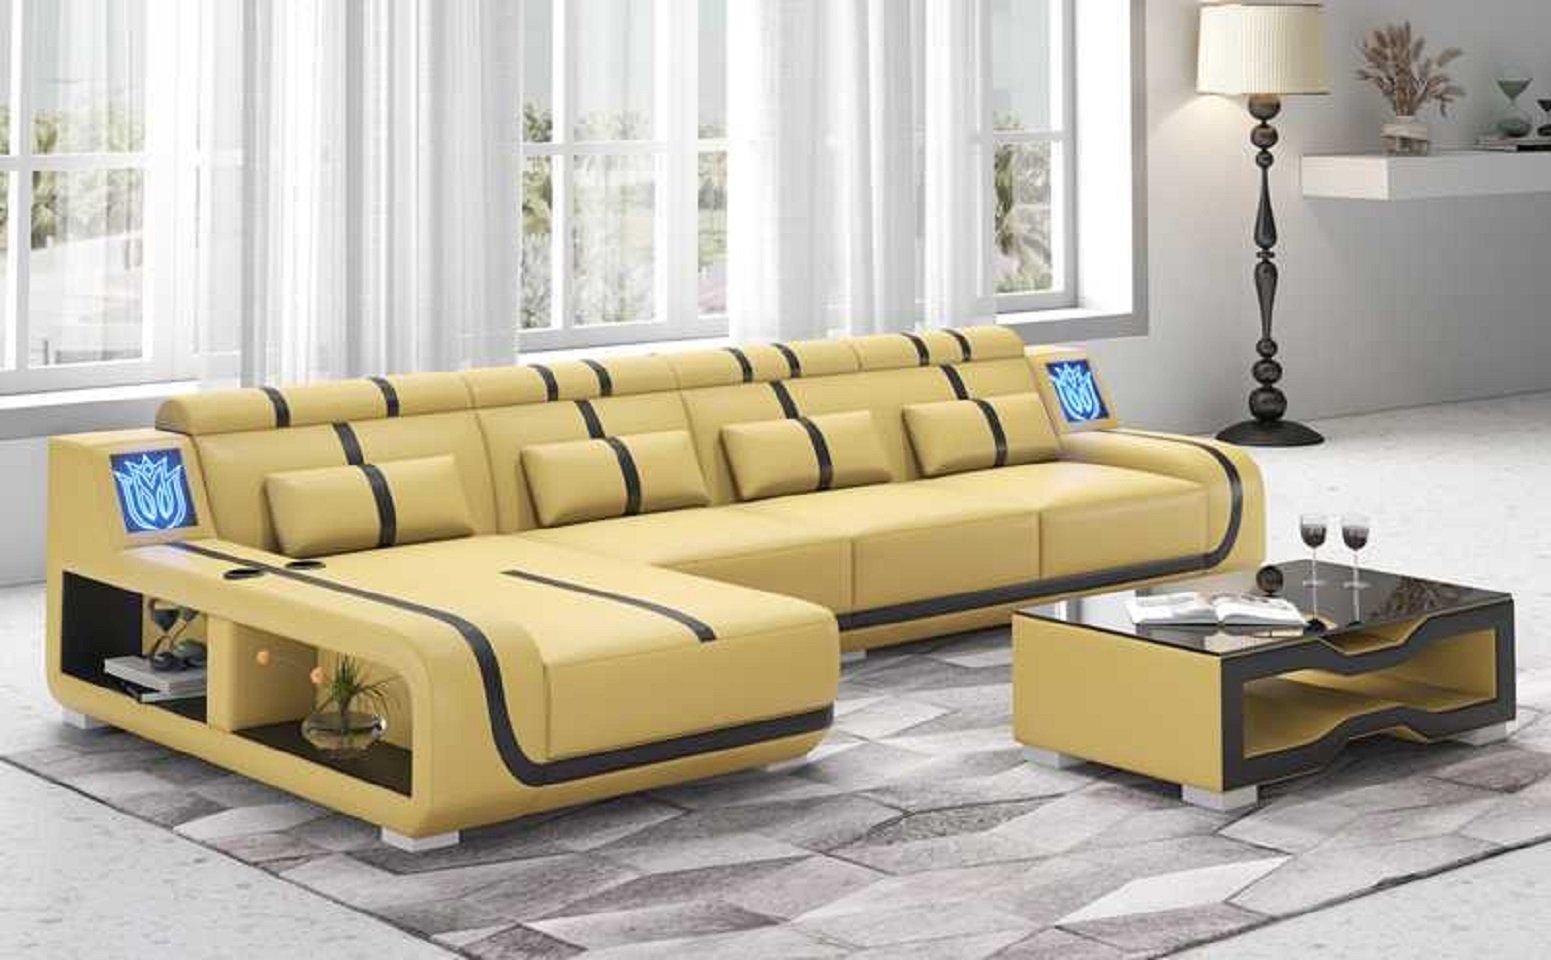 JVmoebel Ecksofa Design Ecksofa Couch L Form Liege Modern Sofa couchen, 3 Teile, Made in Europe Beige